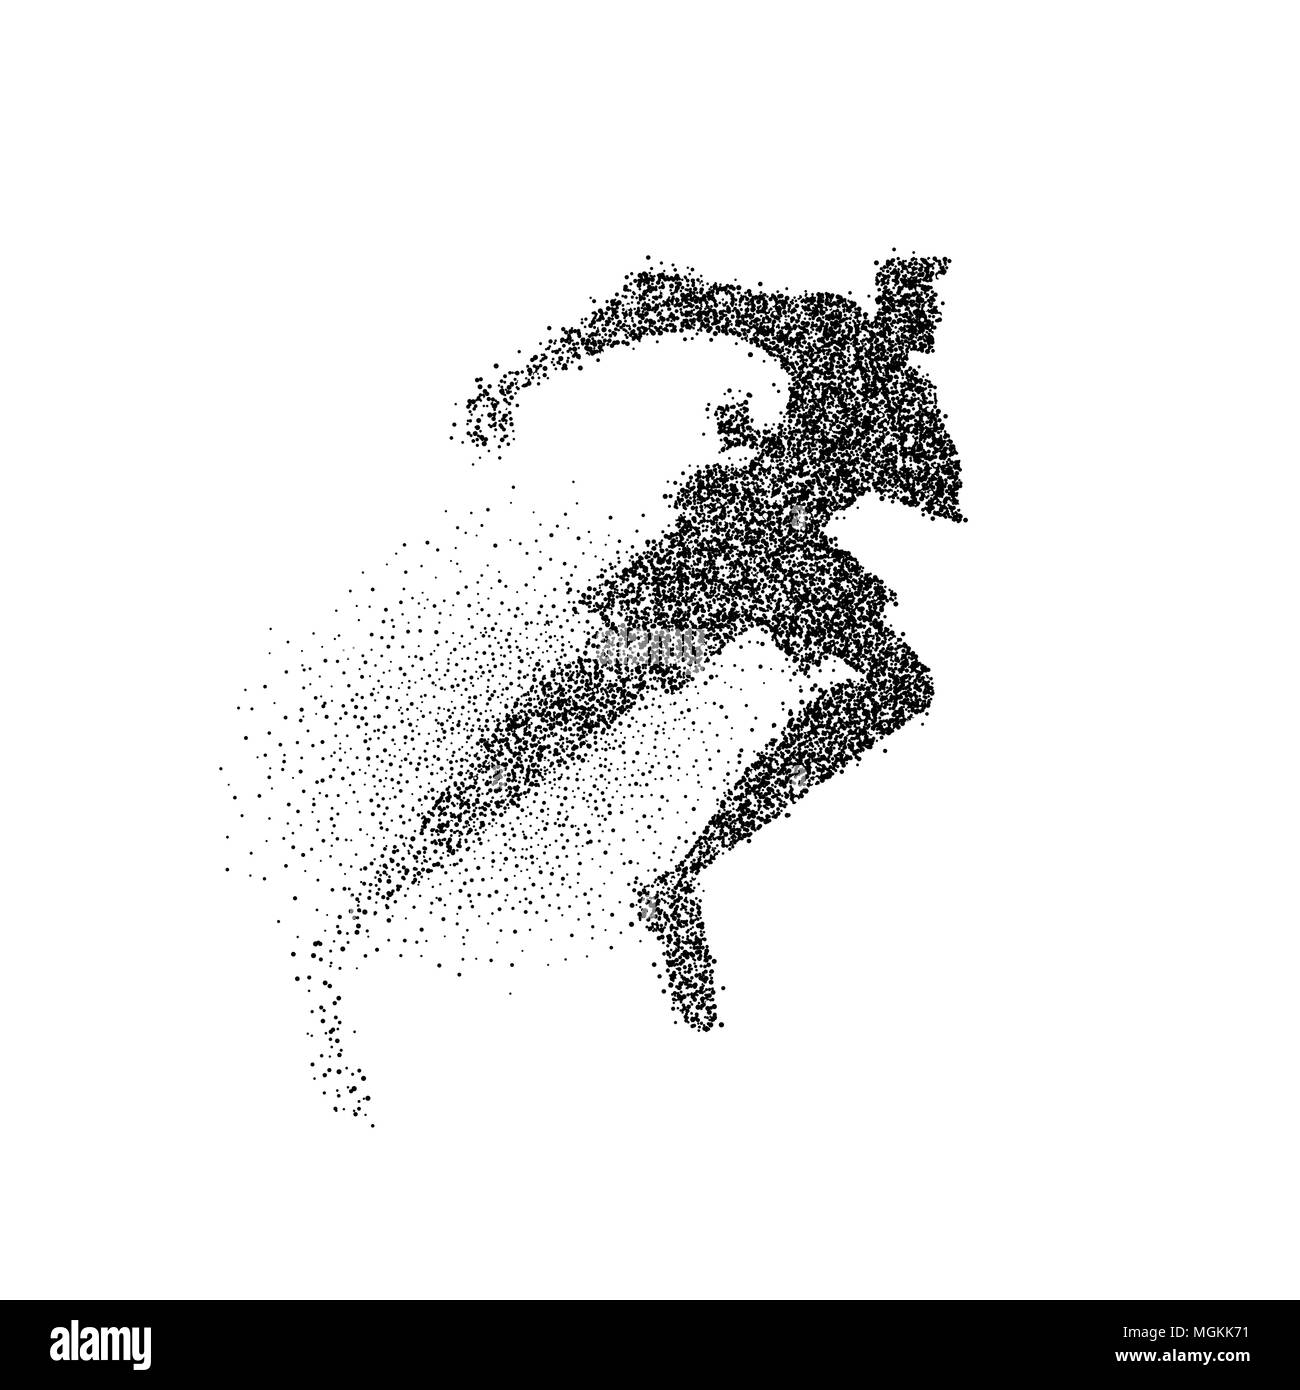 Mann laufen Silhouette aus schwarzem Partikel Staub splash auf isolierten Hintergrund. Abstrakte Athlet Junge in Aktion. EPS 10 Vektor. Stock Vektor